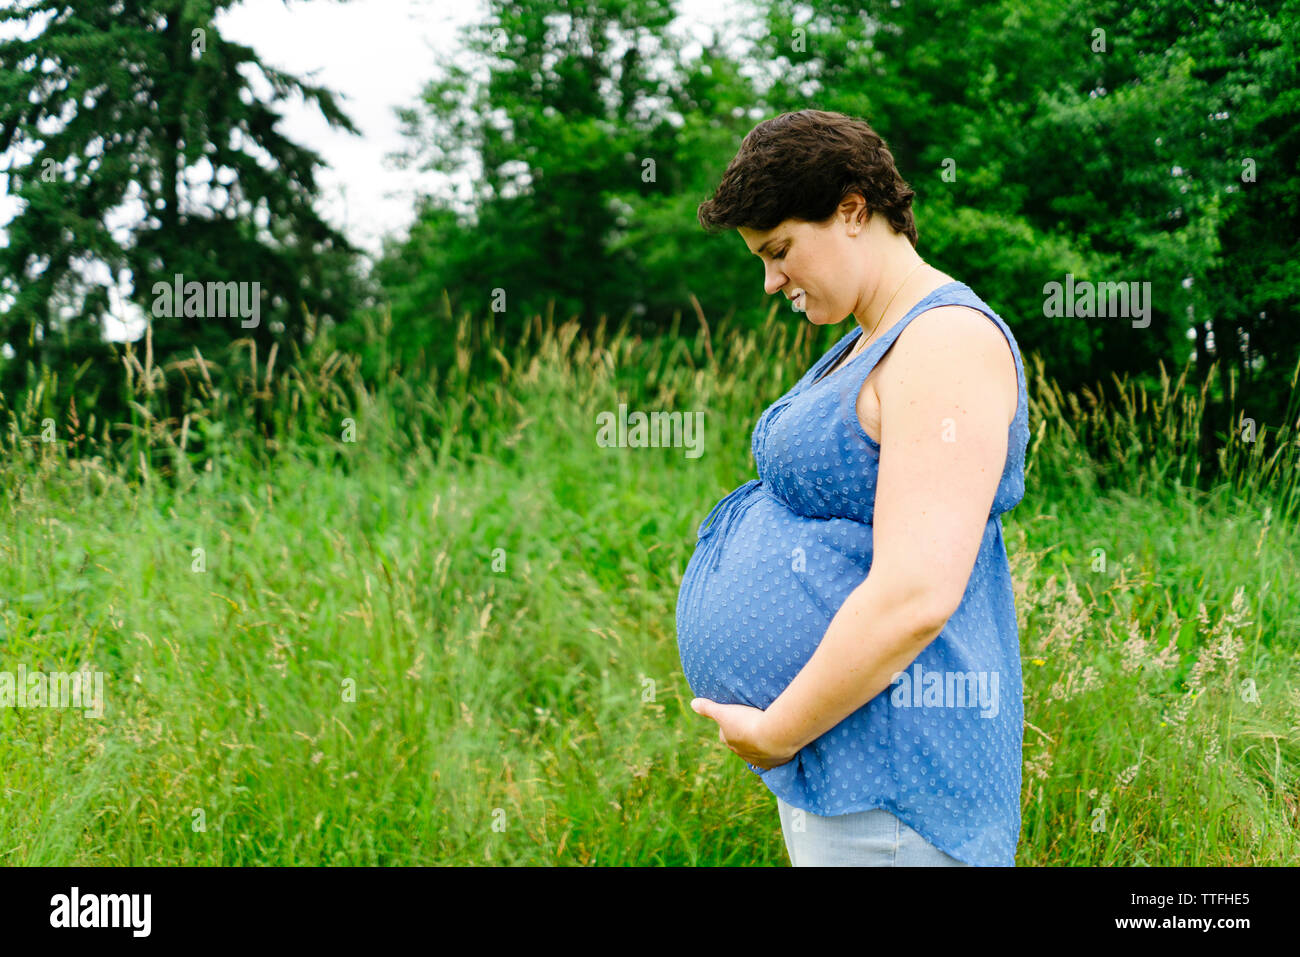 Vue latérale d'une femme enceinte en regardant son ventre Banque D'Images